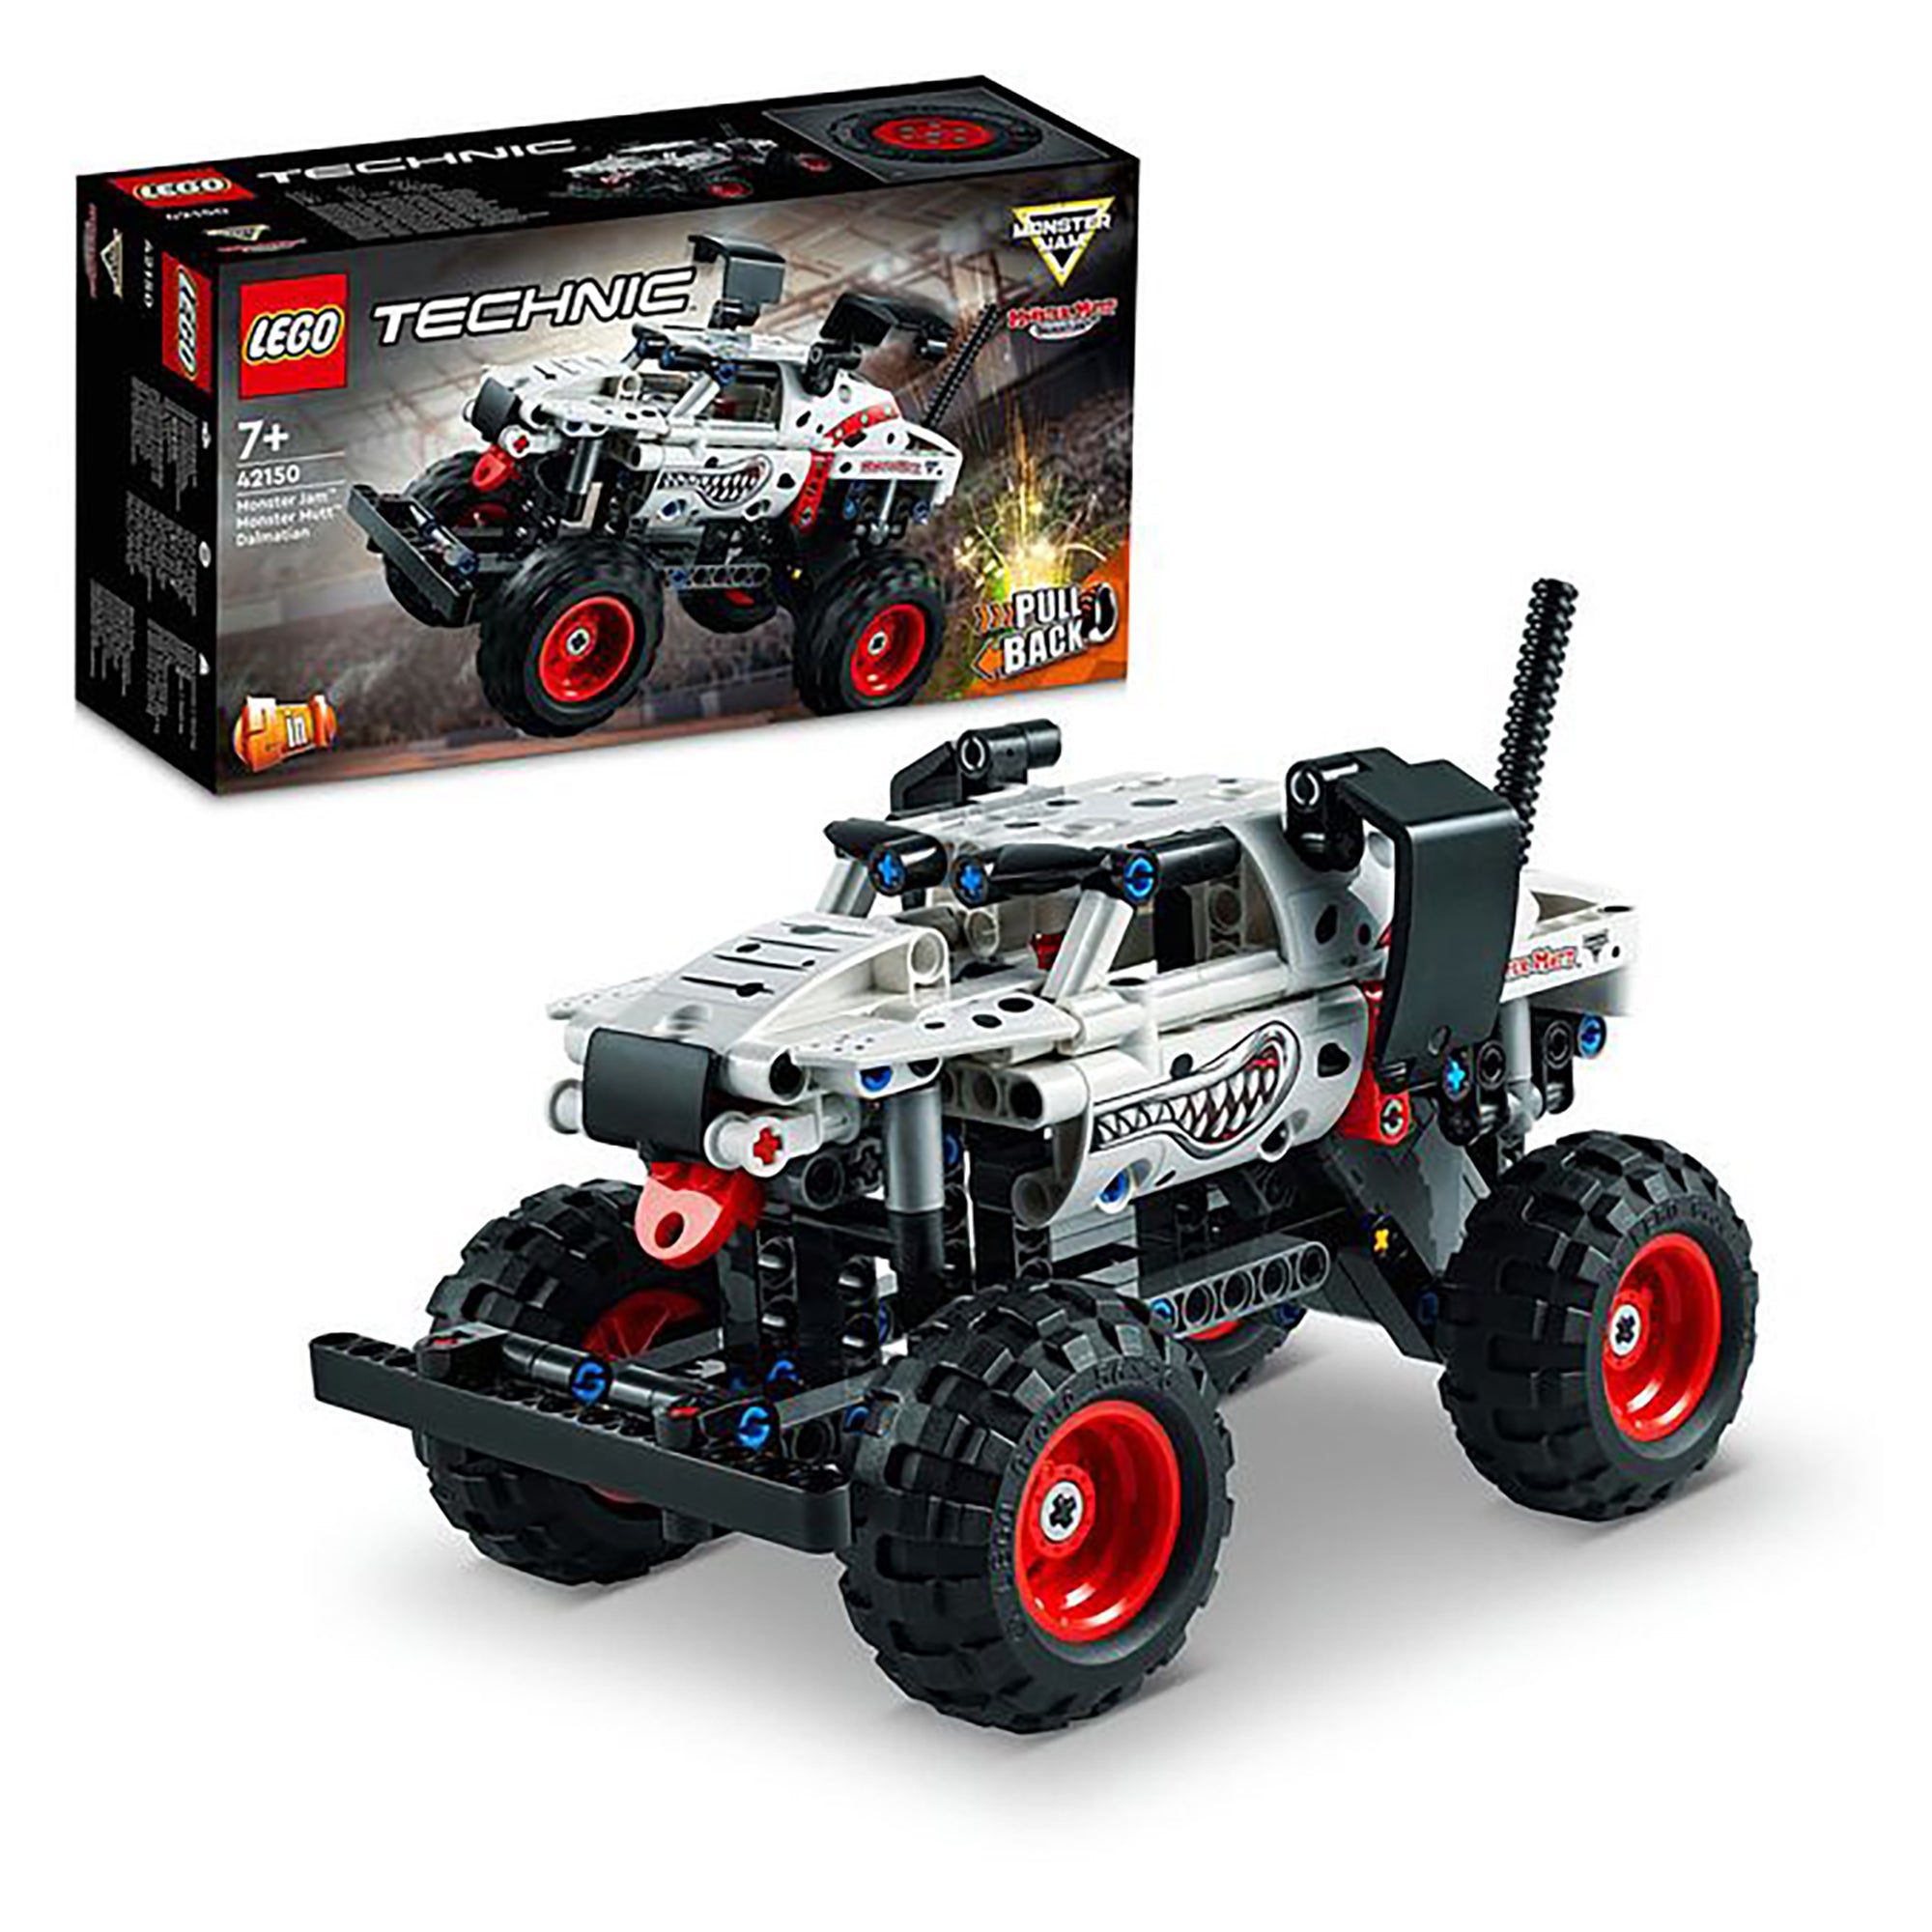 LEGO Technic Monster Jam Monster Mutt Dalmatian 42150 (244 pieces)